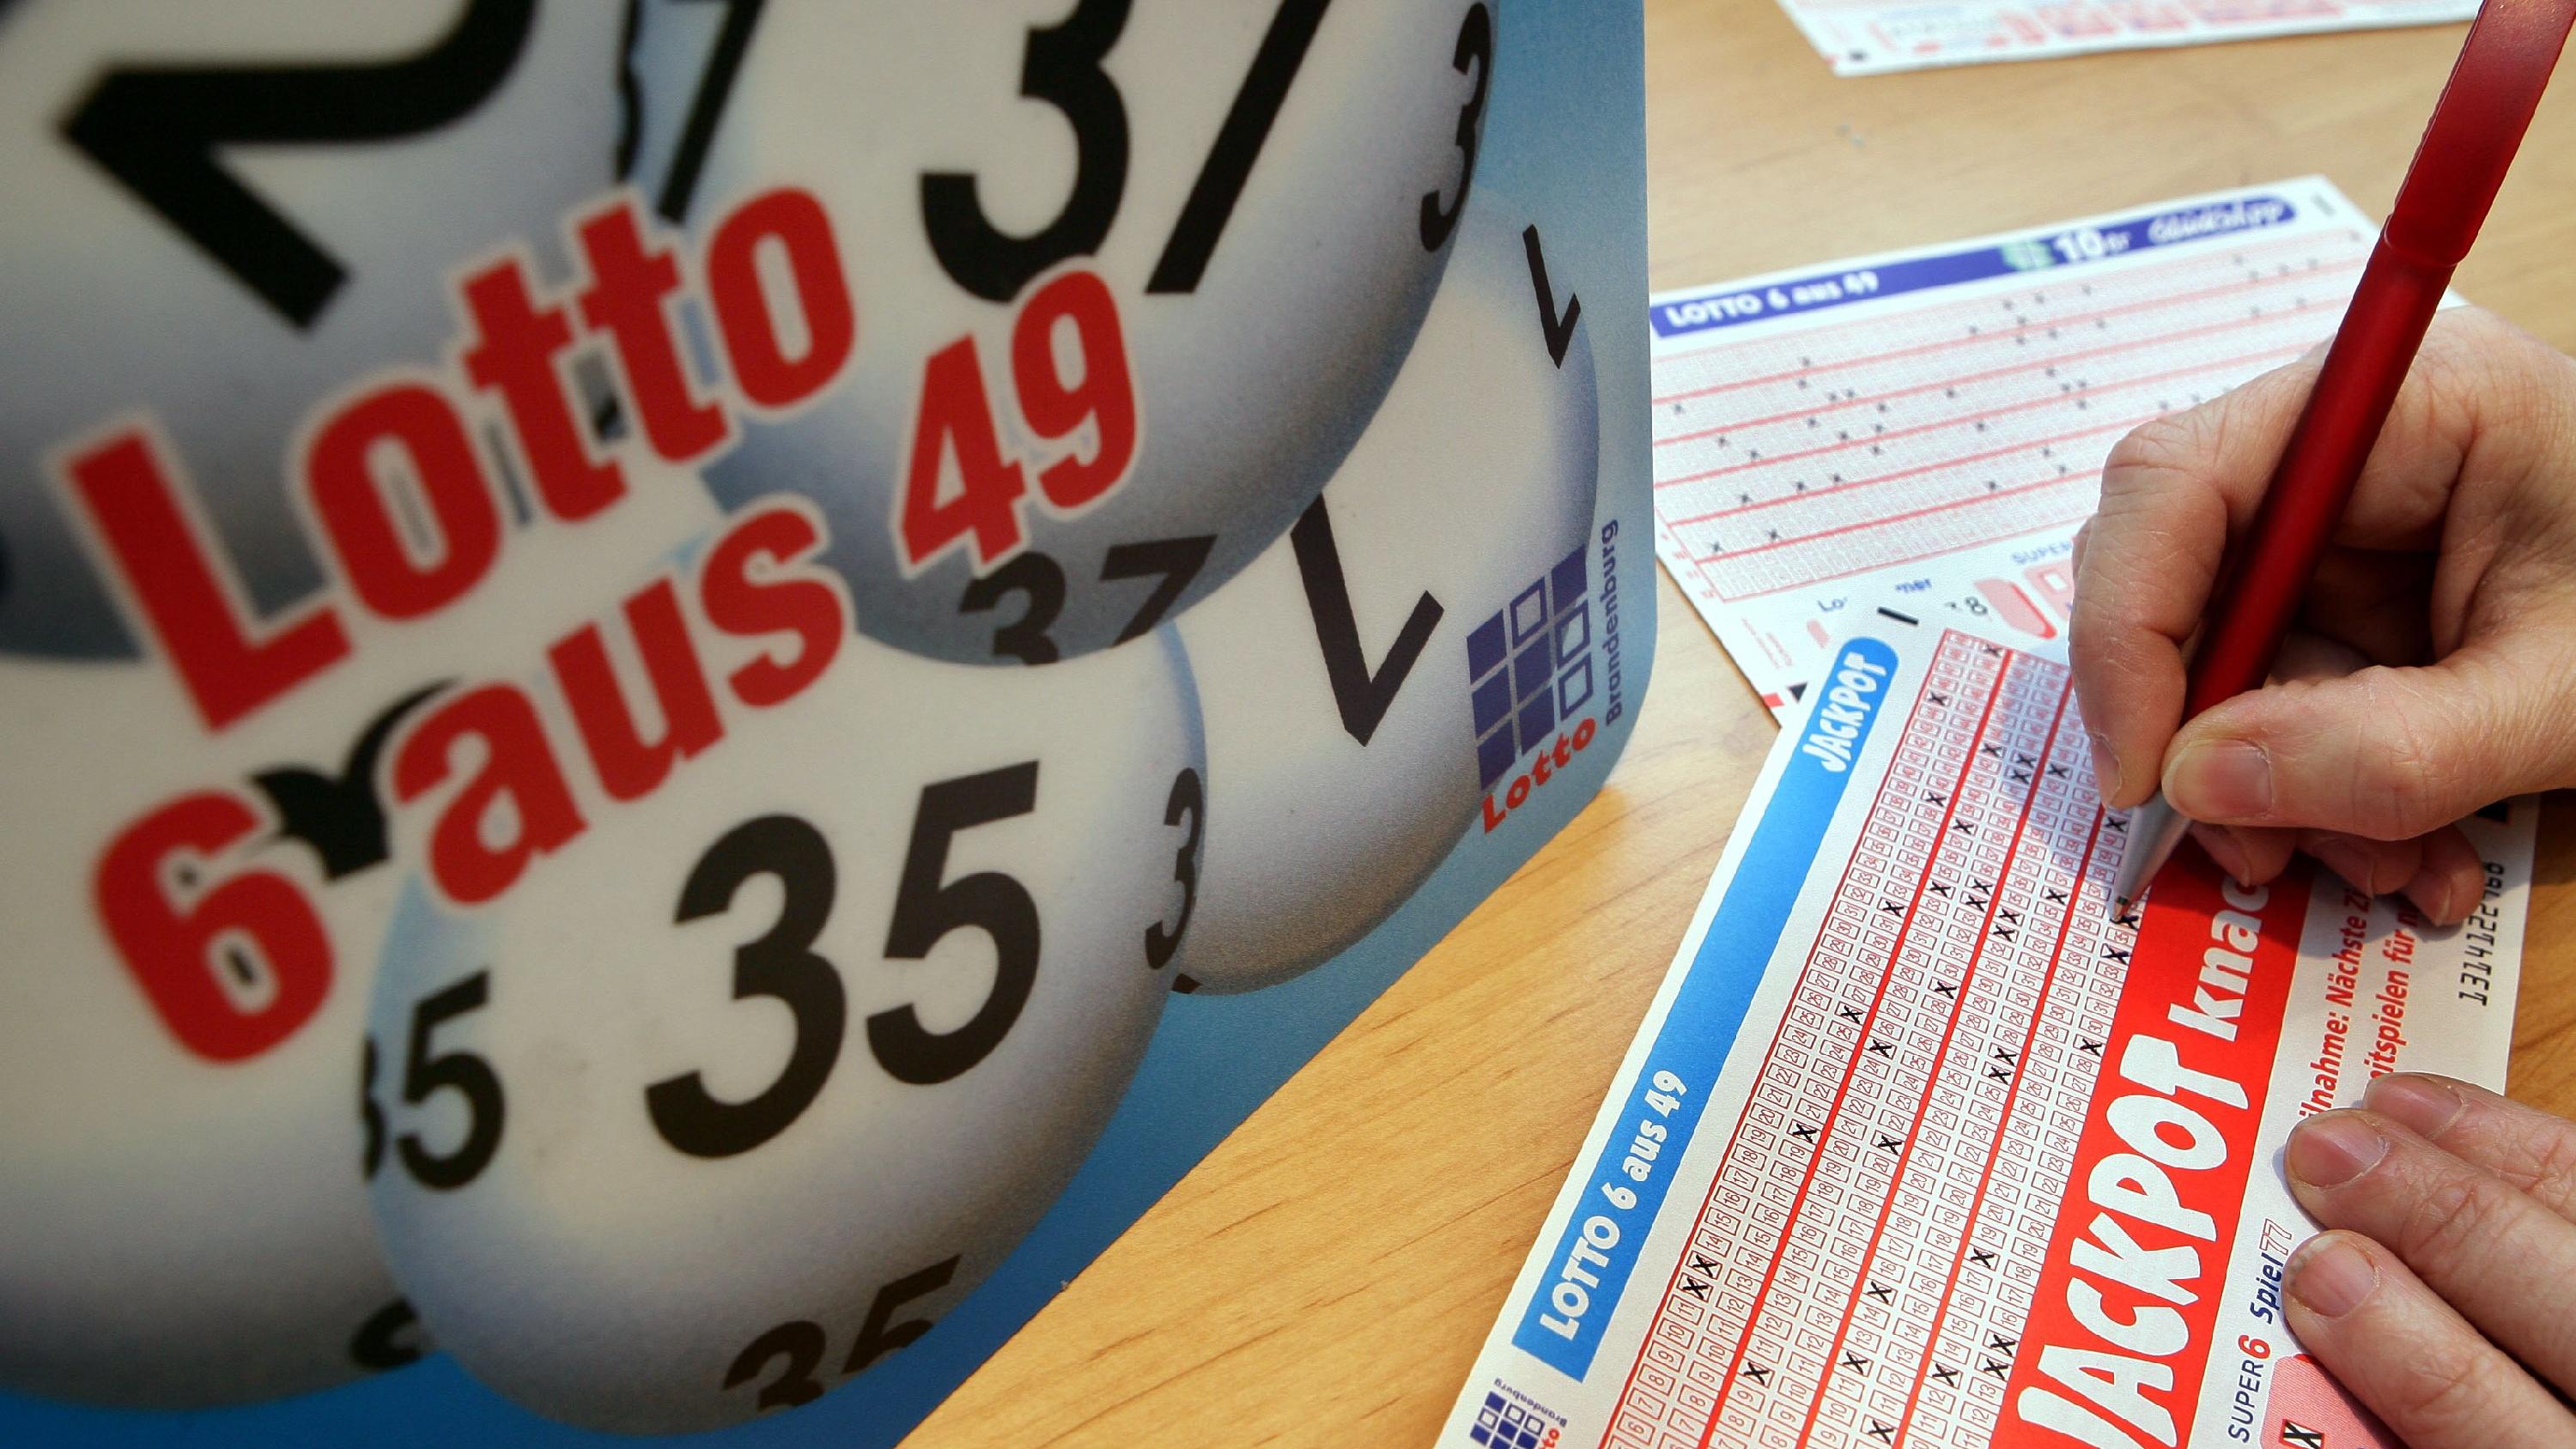 ARCHIV - In einer Lottoannahmestelle in Frankfurt (Oder) füllt eine Frau ihren Tippschein aus (Archivfoto vom 09.02.2006). Die Lotto-Annahmestellen im Land stellen sich für diesen Mittwoch (04.10.2006) auf einen Ansturm ein: Es geht um den größten Lo